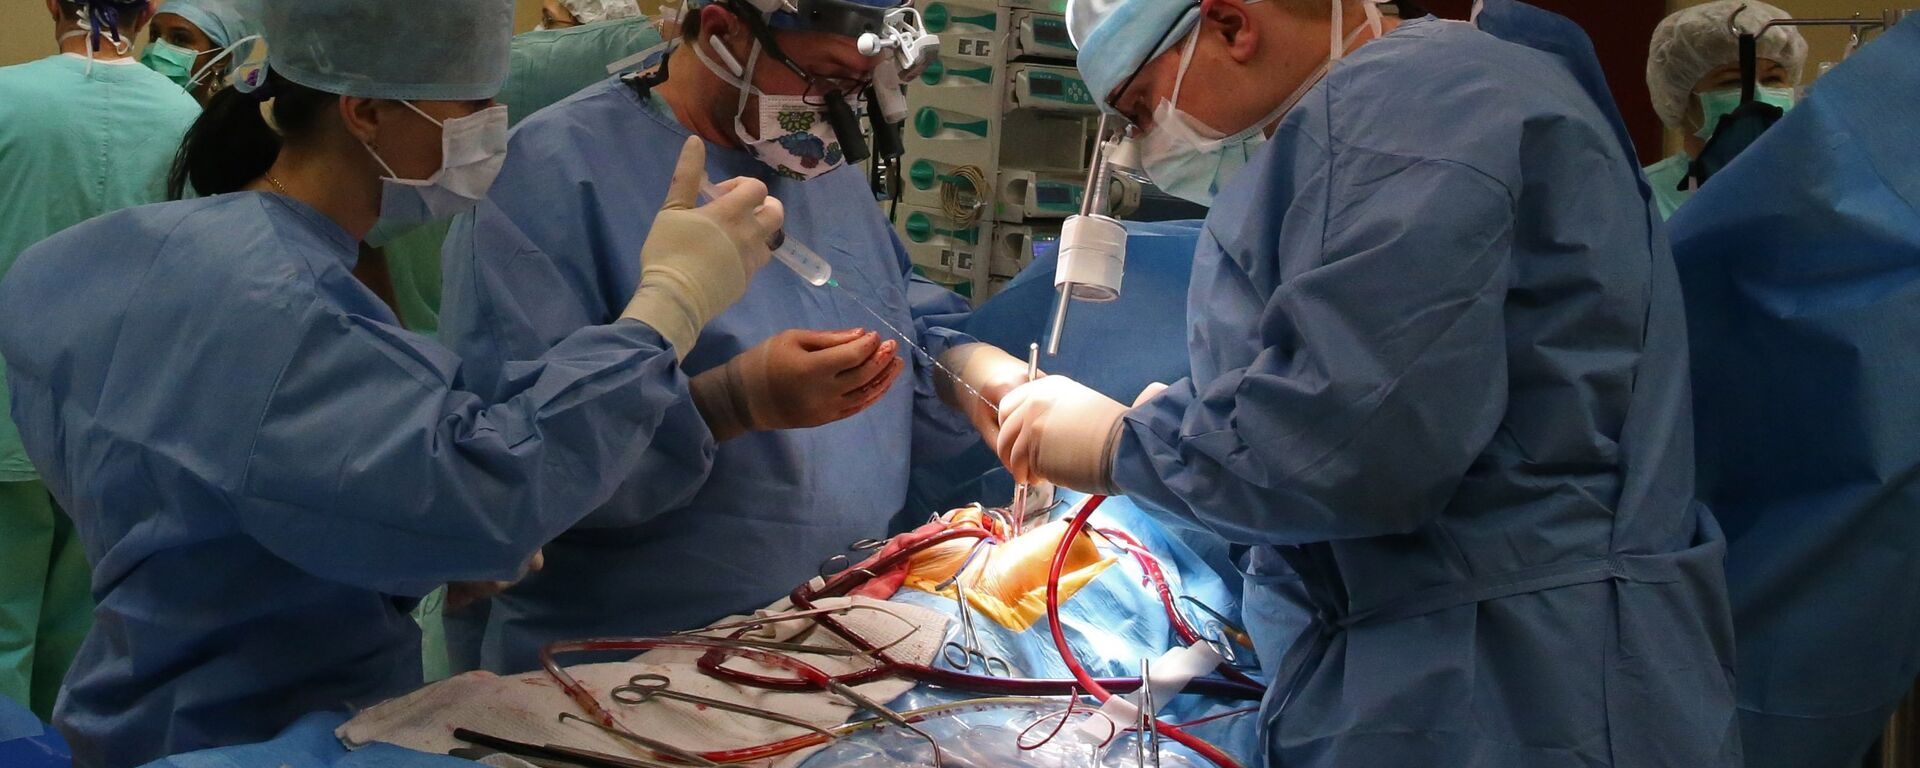 Хирурги проводят операцию на открытом сердце - Sputnik Латвия, 1920, 04.11.2021